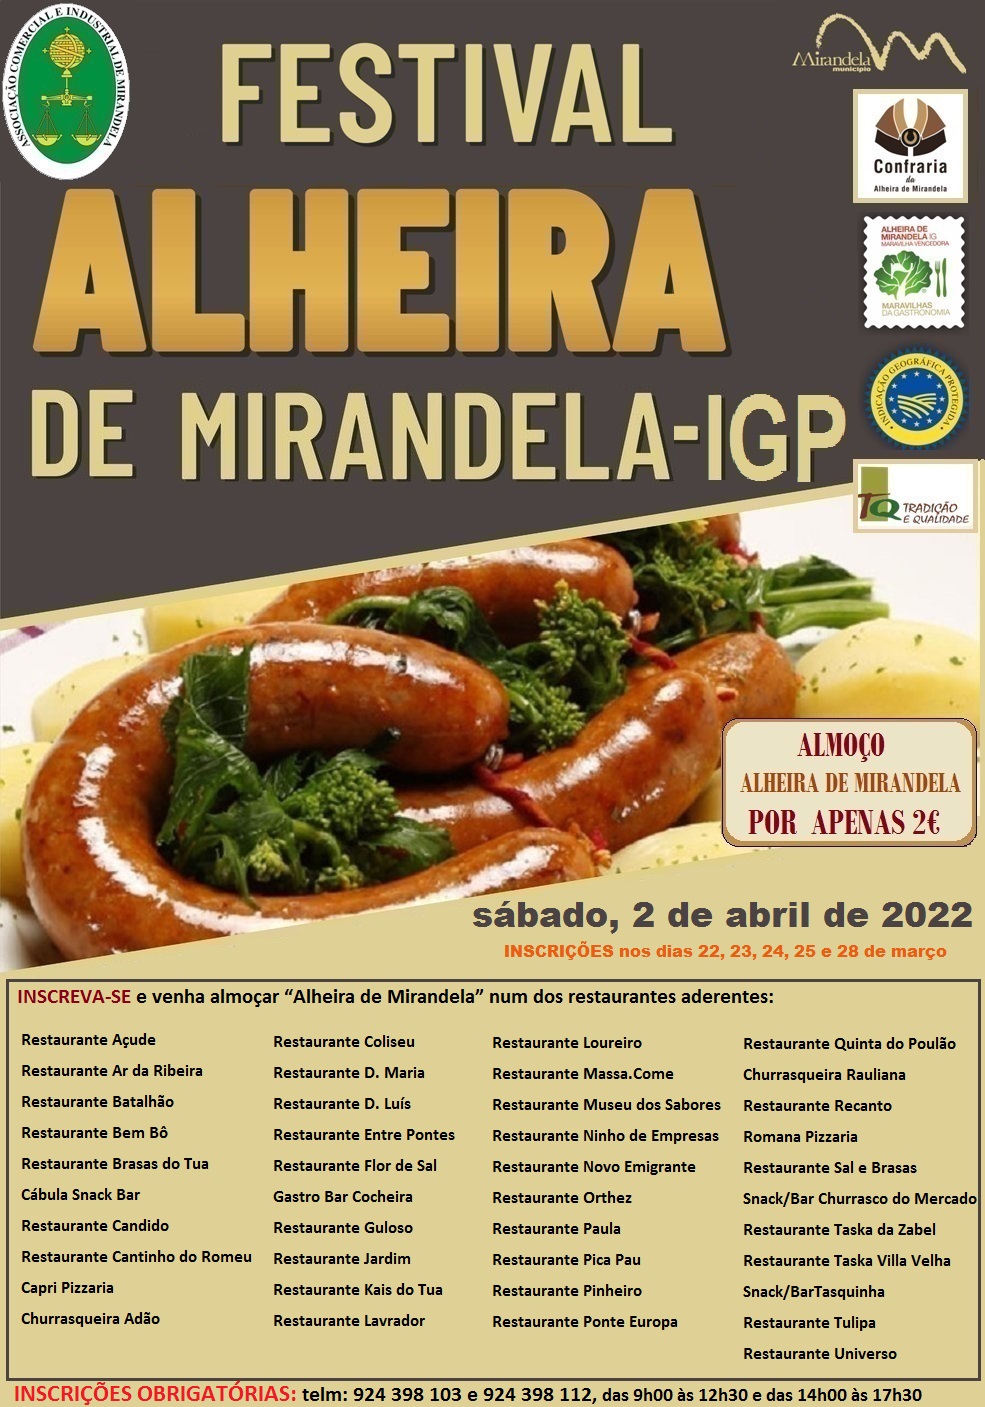 You are currently viewing Festival da Alheira de Mirandela IGP